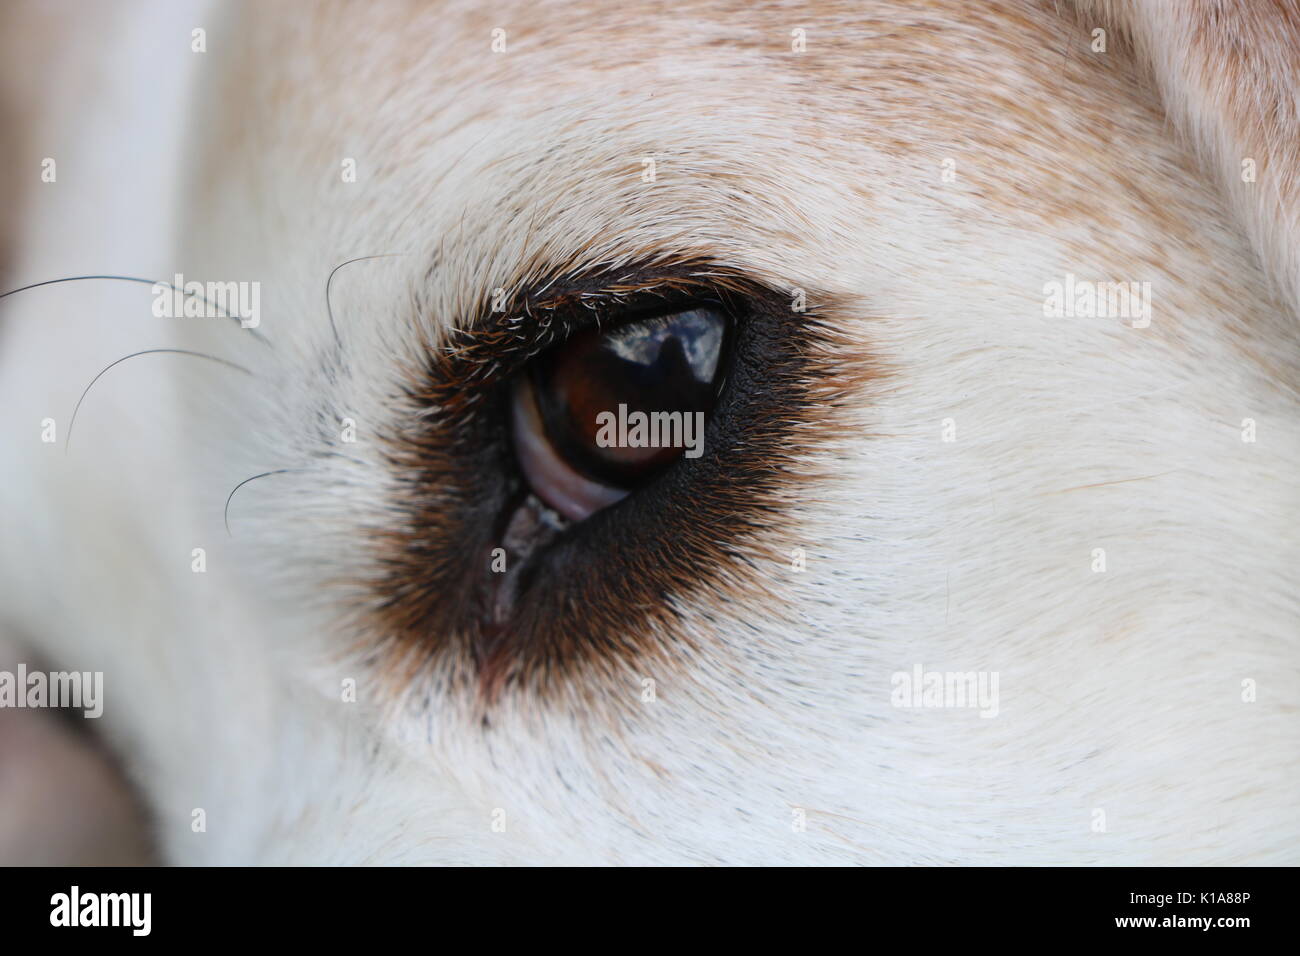 Magnifique œil de beagle de près Banque D'Images